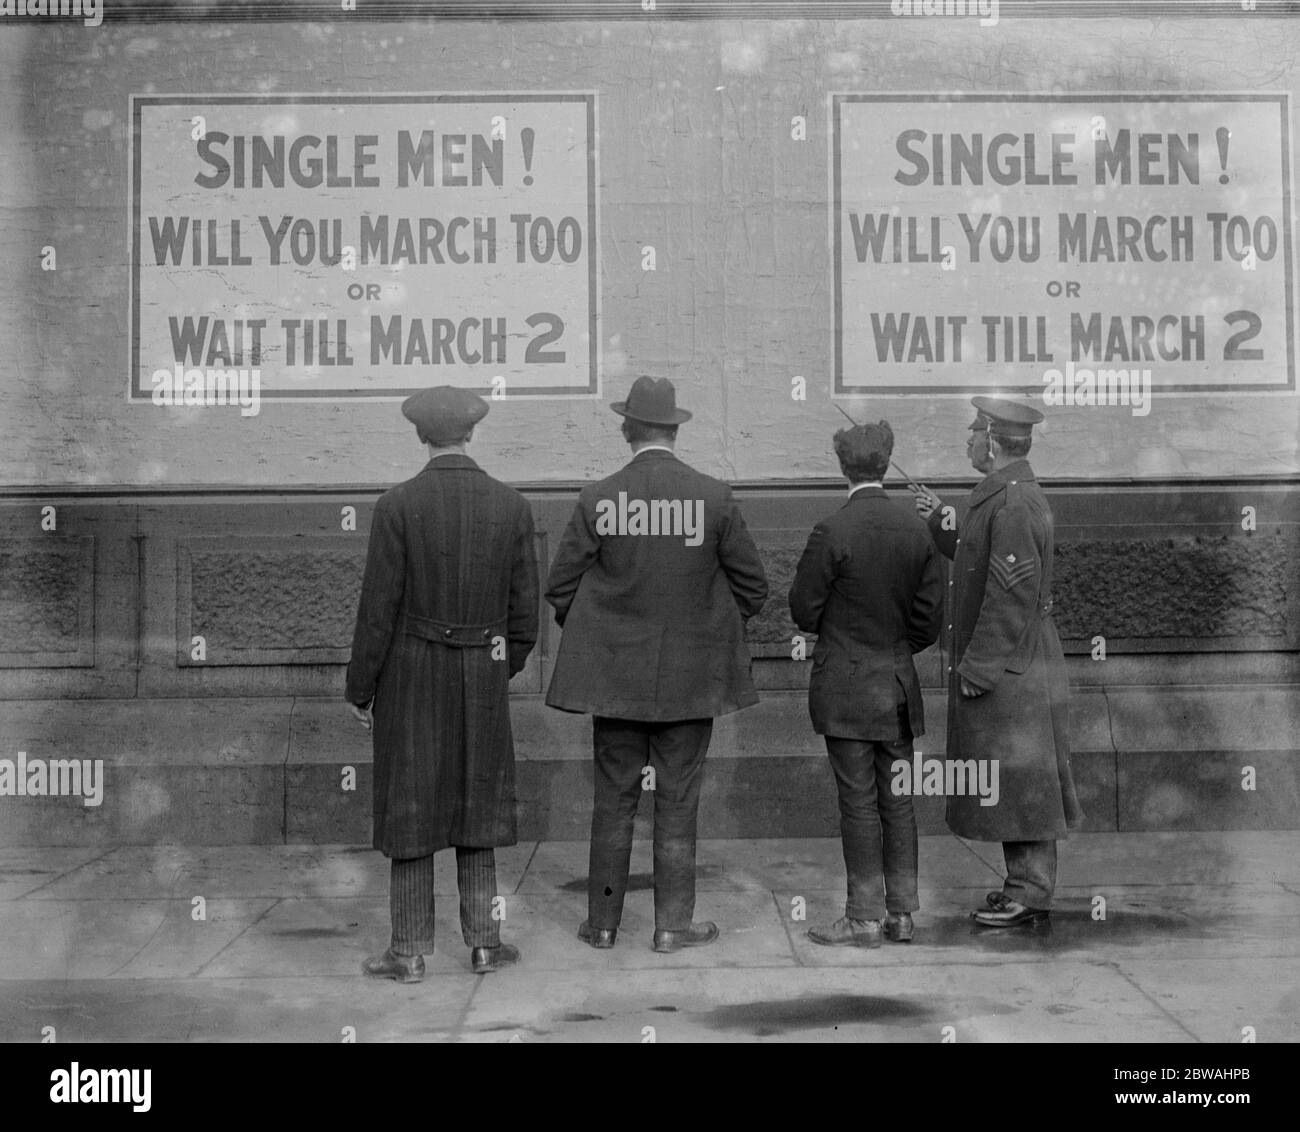 Aviso de reclutamiento para hombres solteros en Trafalgar Square hombres solteros! ¿marchar también o esperar hasta el 2 de marzo Foto de stock